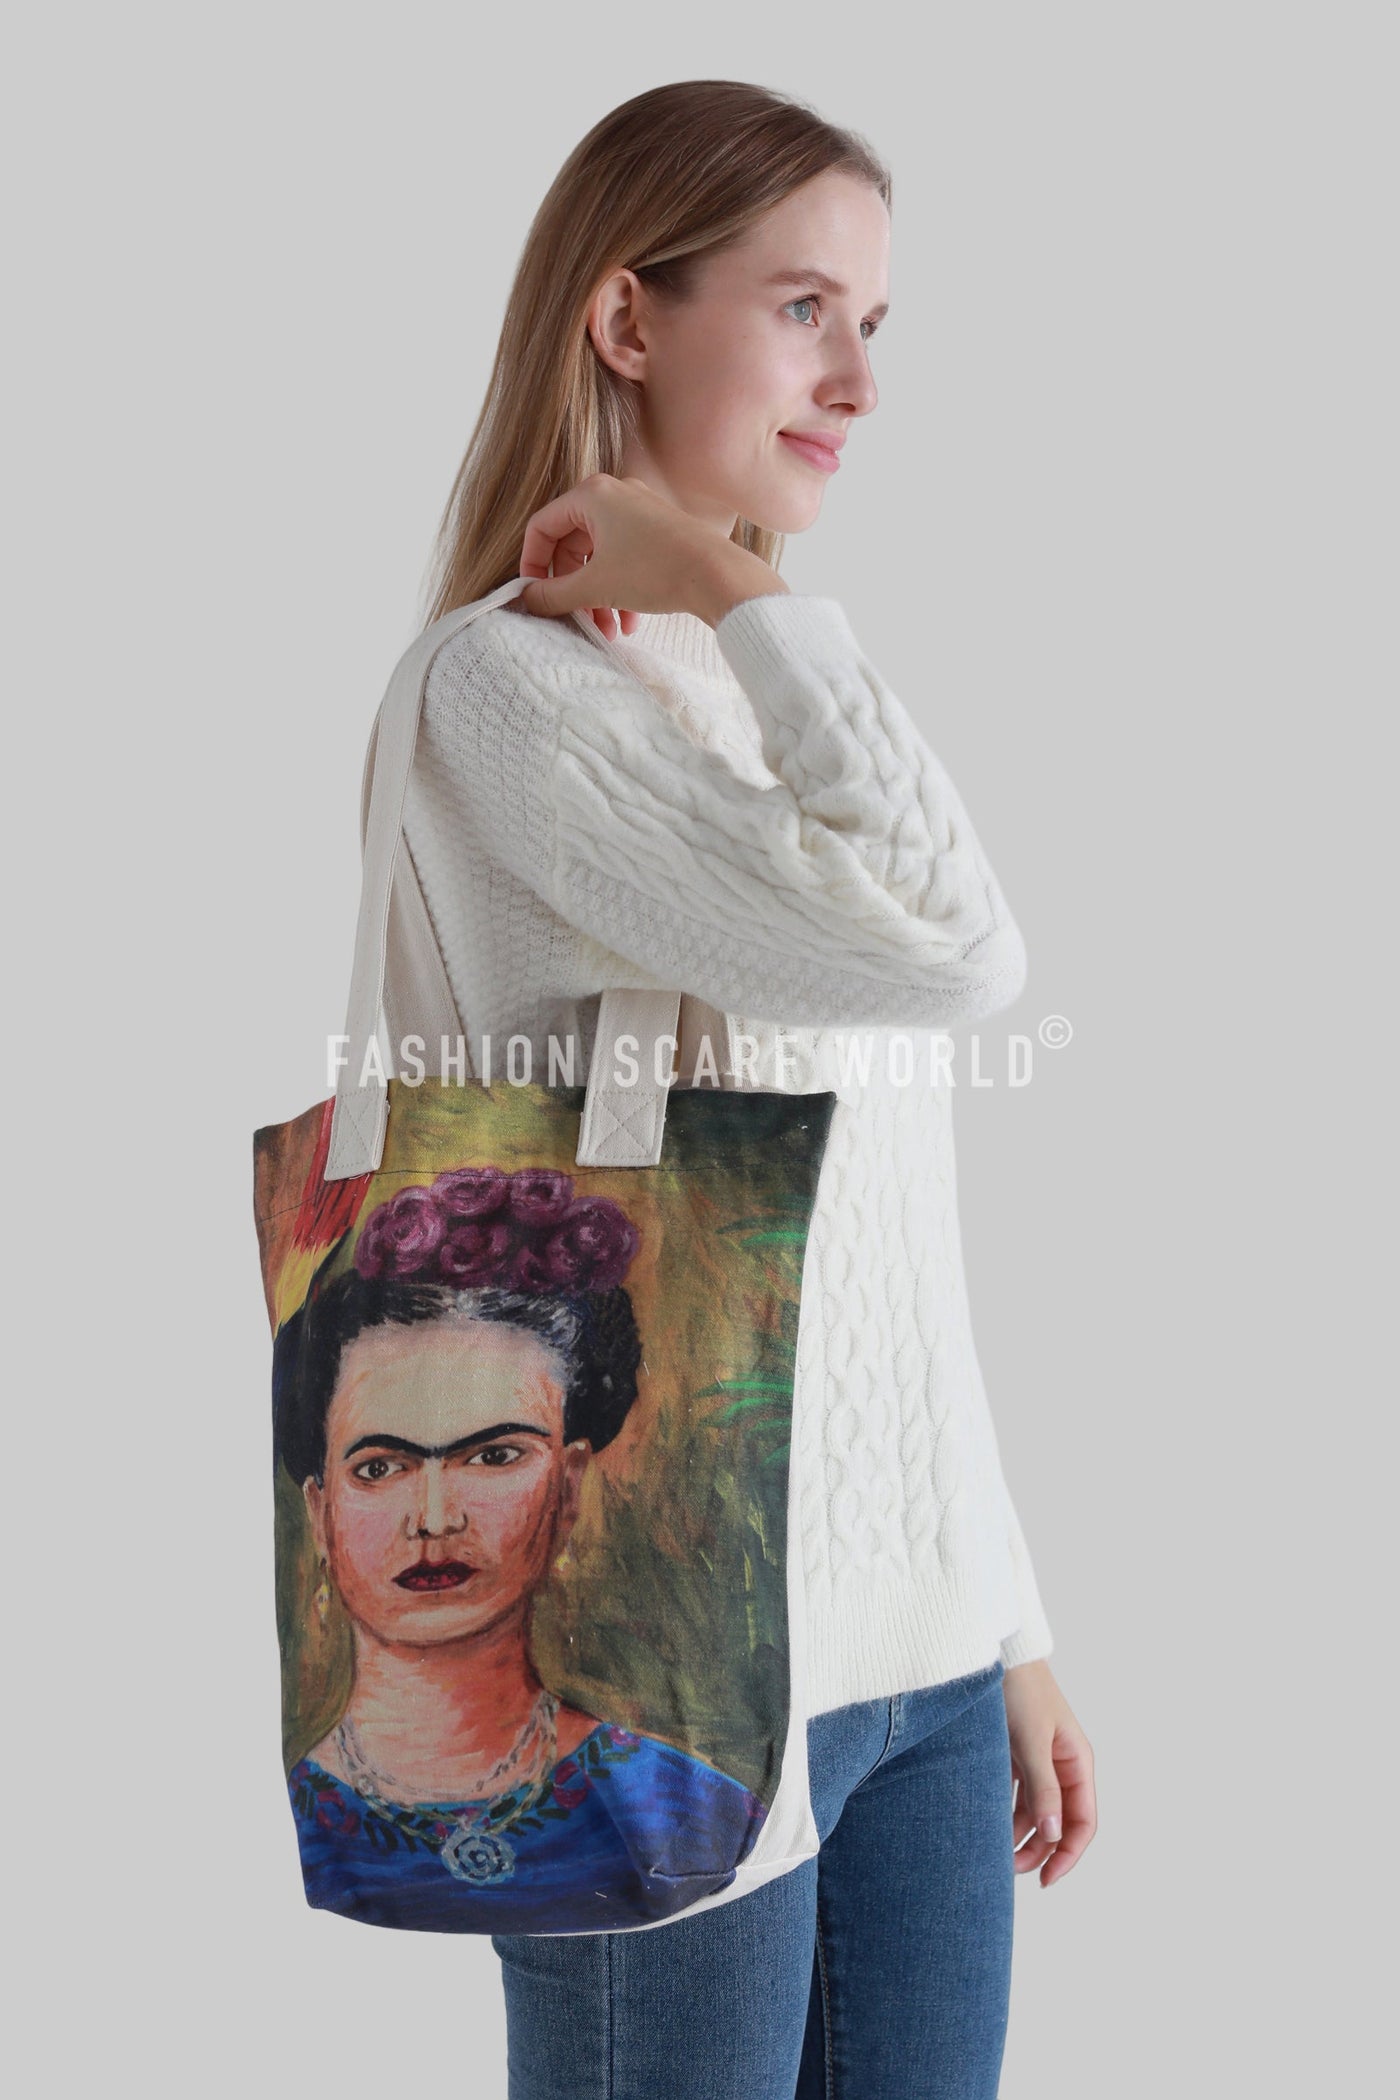 Frida Kahlo Self Portrait with Parrot Art Cotton Tote Bag